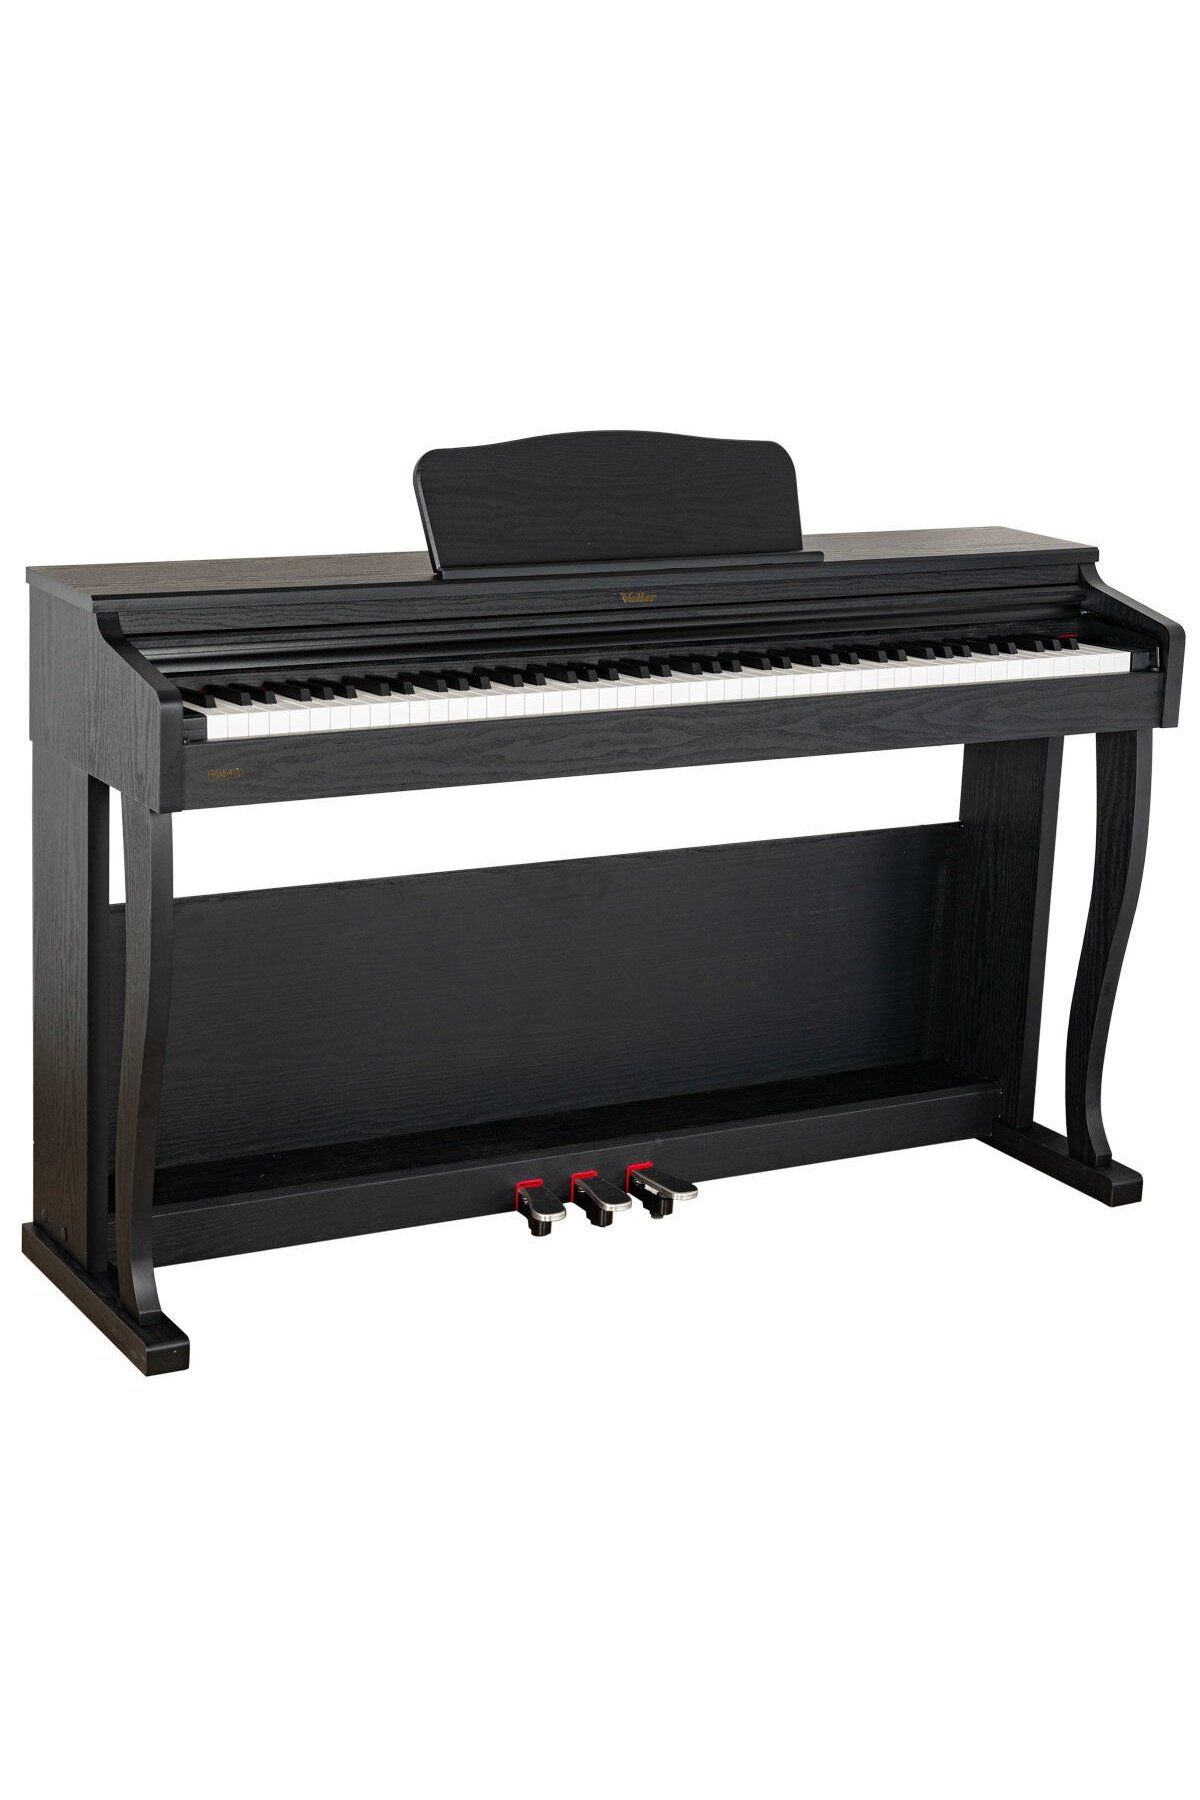 VALLER PM40 Tuş Hassasiyetli Usb Bağlantılı Farklı Renk Seçenekli Dijital Piyano-Siyah